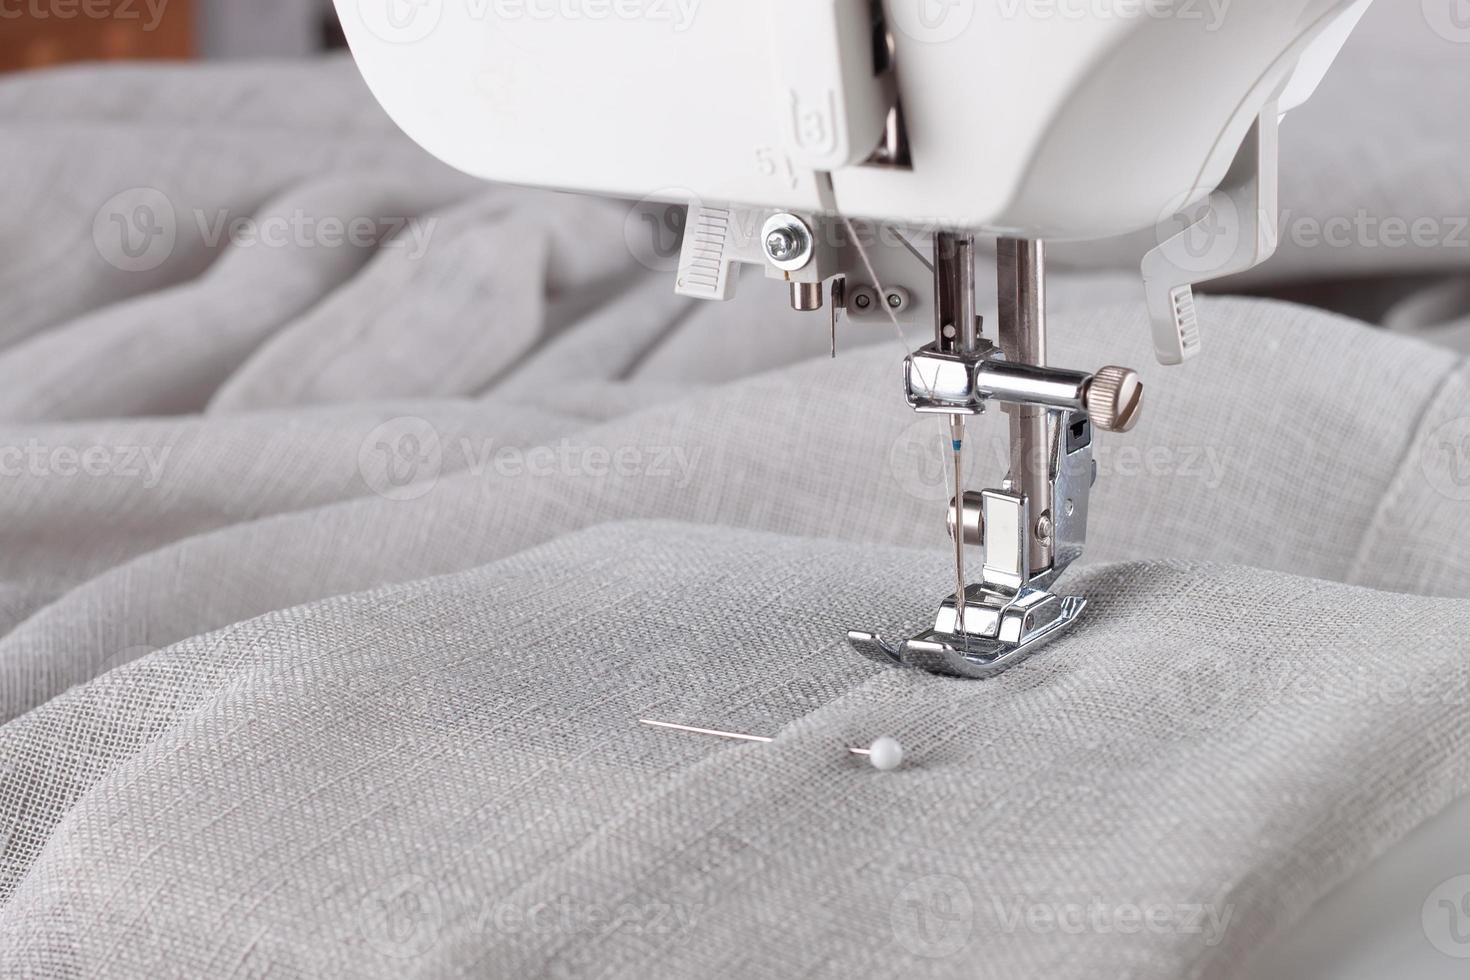 prensatelas de máquina de coser moderna y prenda de vestir. proceso de costura, hecho a mano, hobby, negocio foto